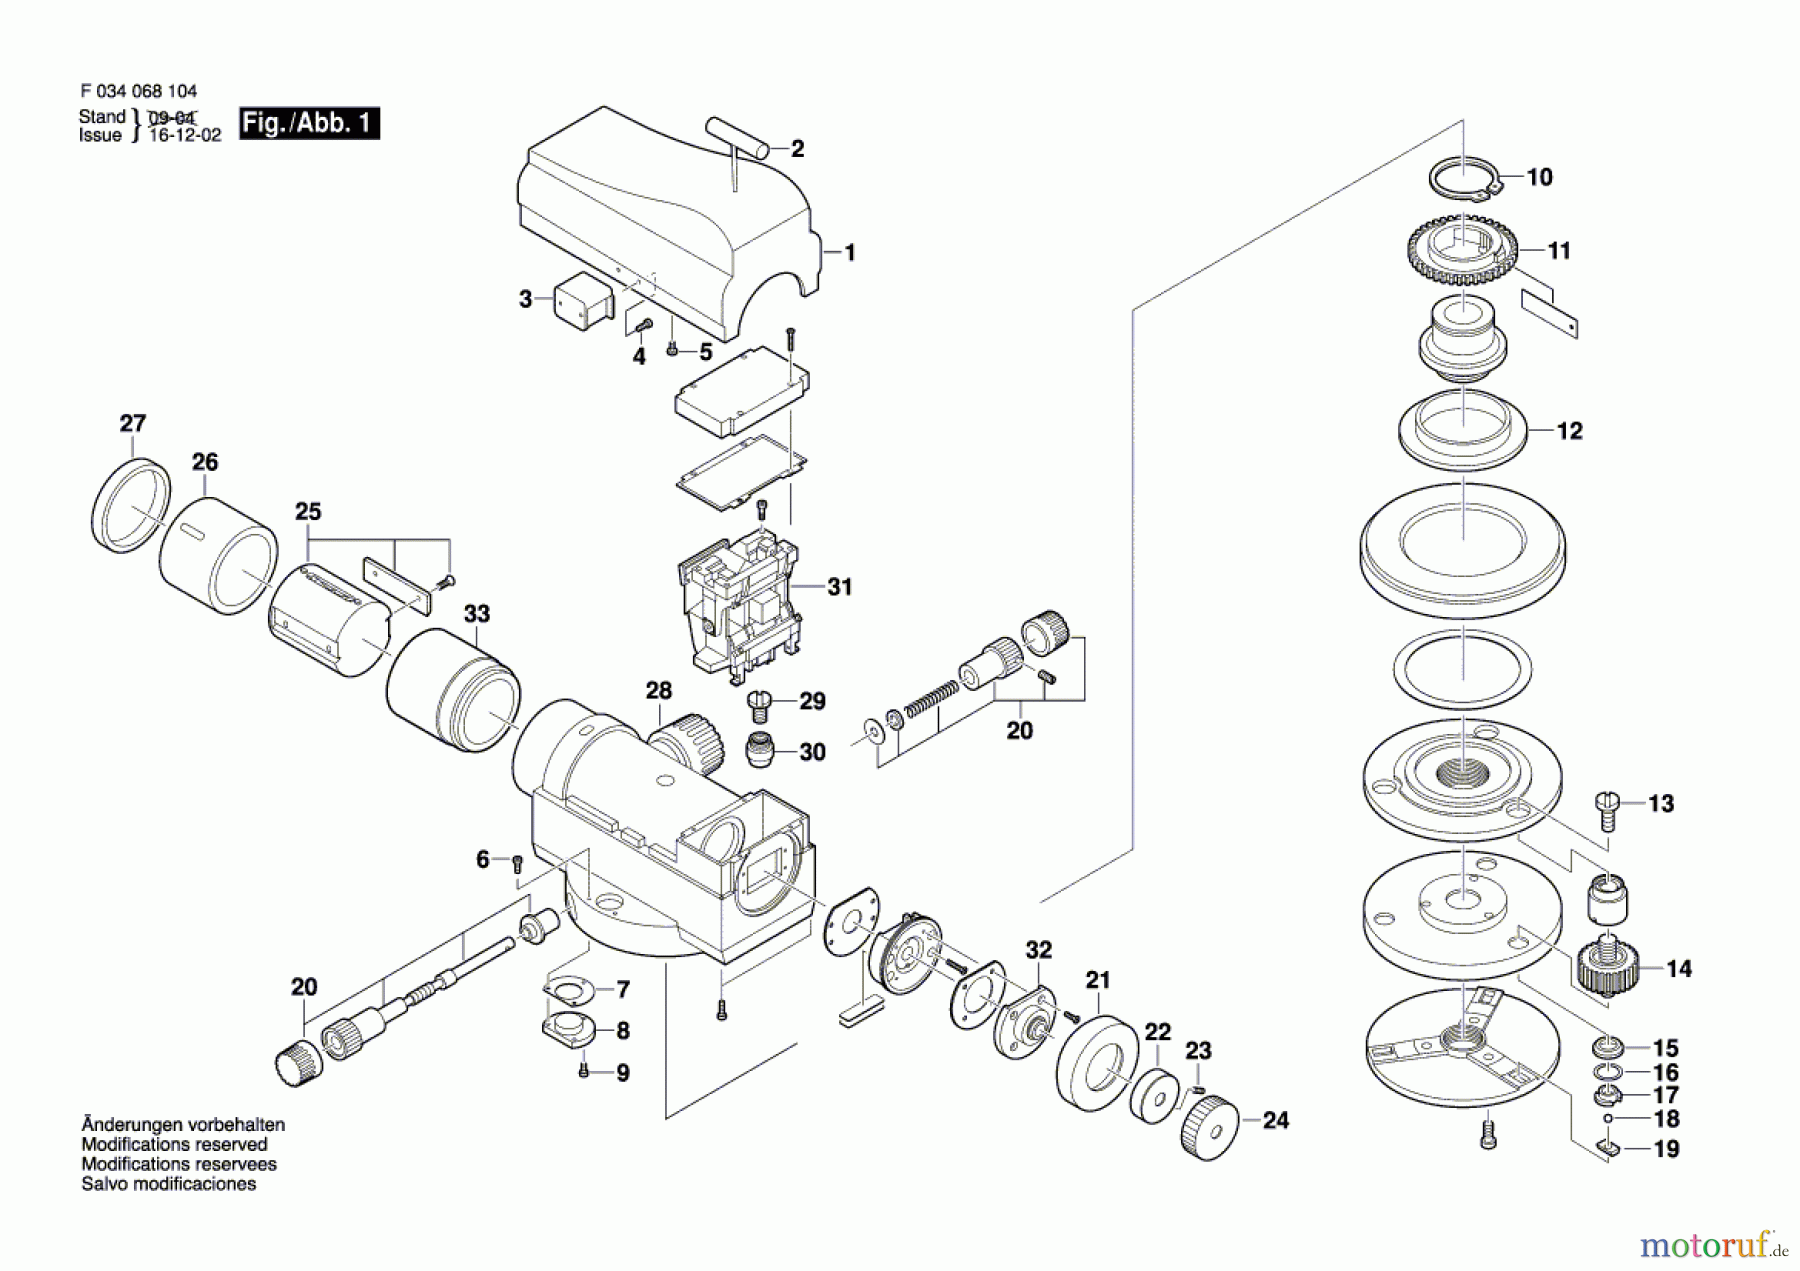  Bosch Werkzeug Lichtempfänger SAL32ND Seite 1